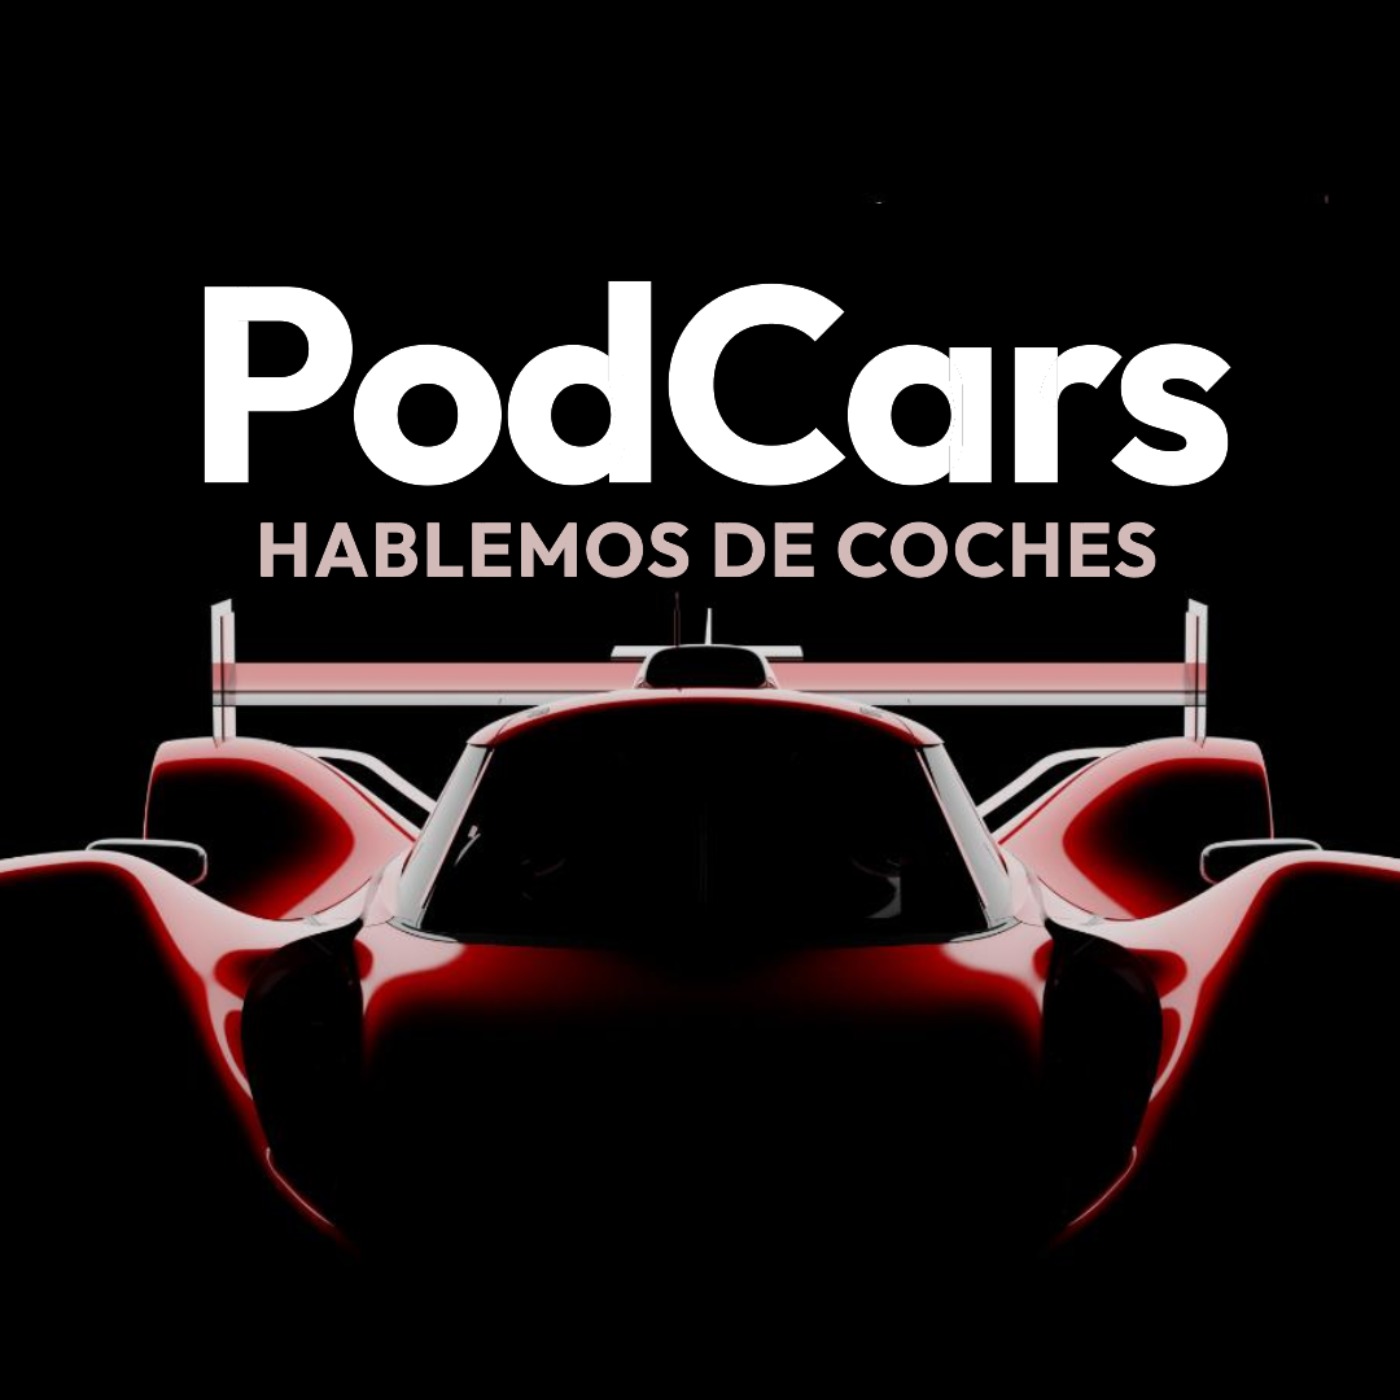 T3 E30 | PodCars: ¿Cuánto sabemos de coches?